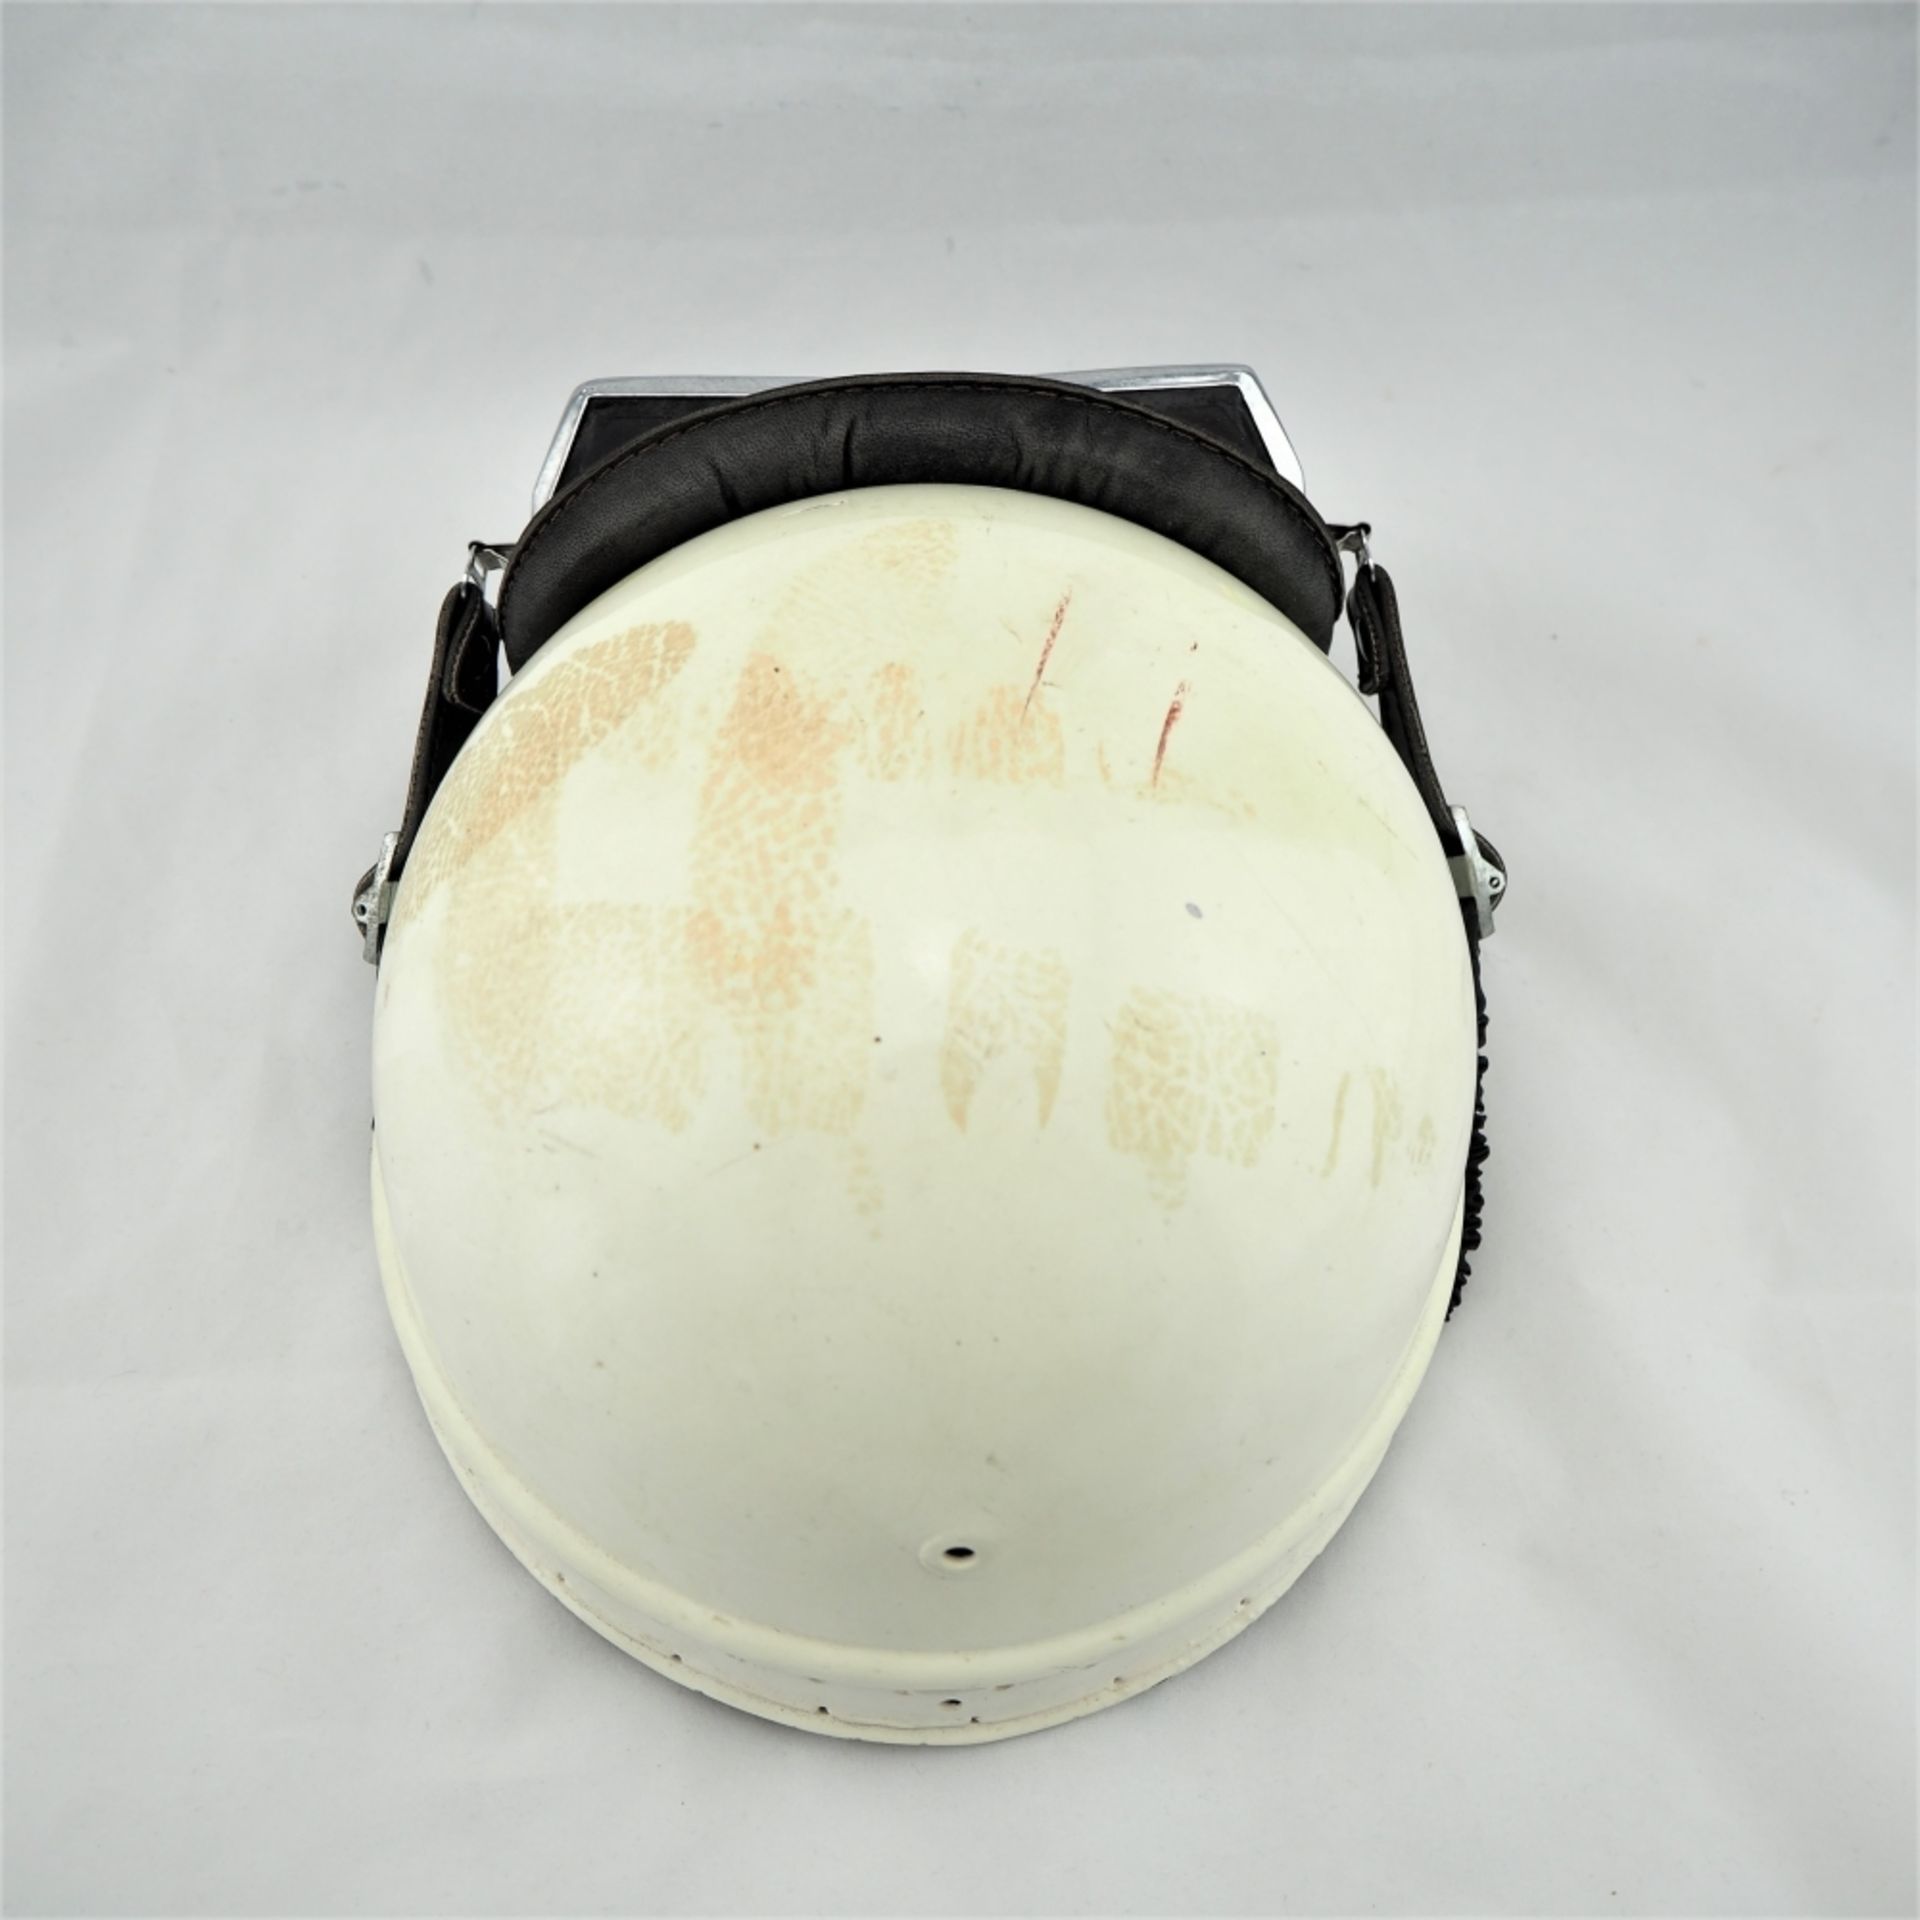 Motorrad-Helm, wohl 50er Jahre,Blech und Leder, mit Original-Brille. Gebraucht mit Spure - Bild 3 aus 4